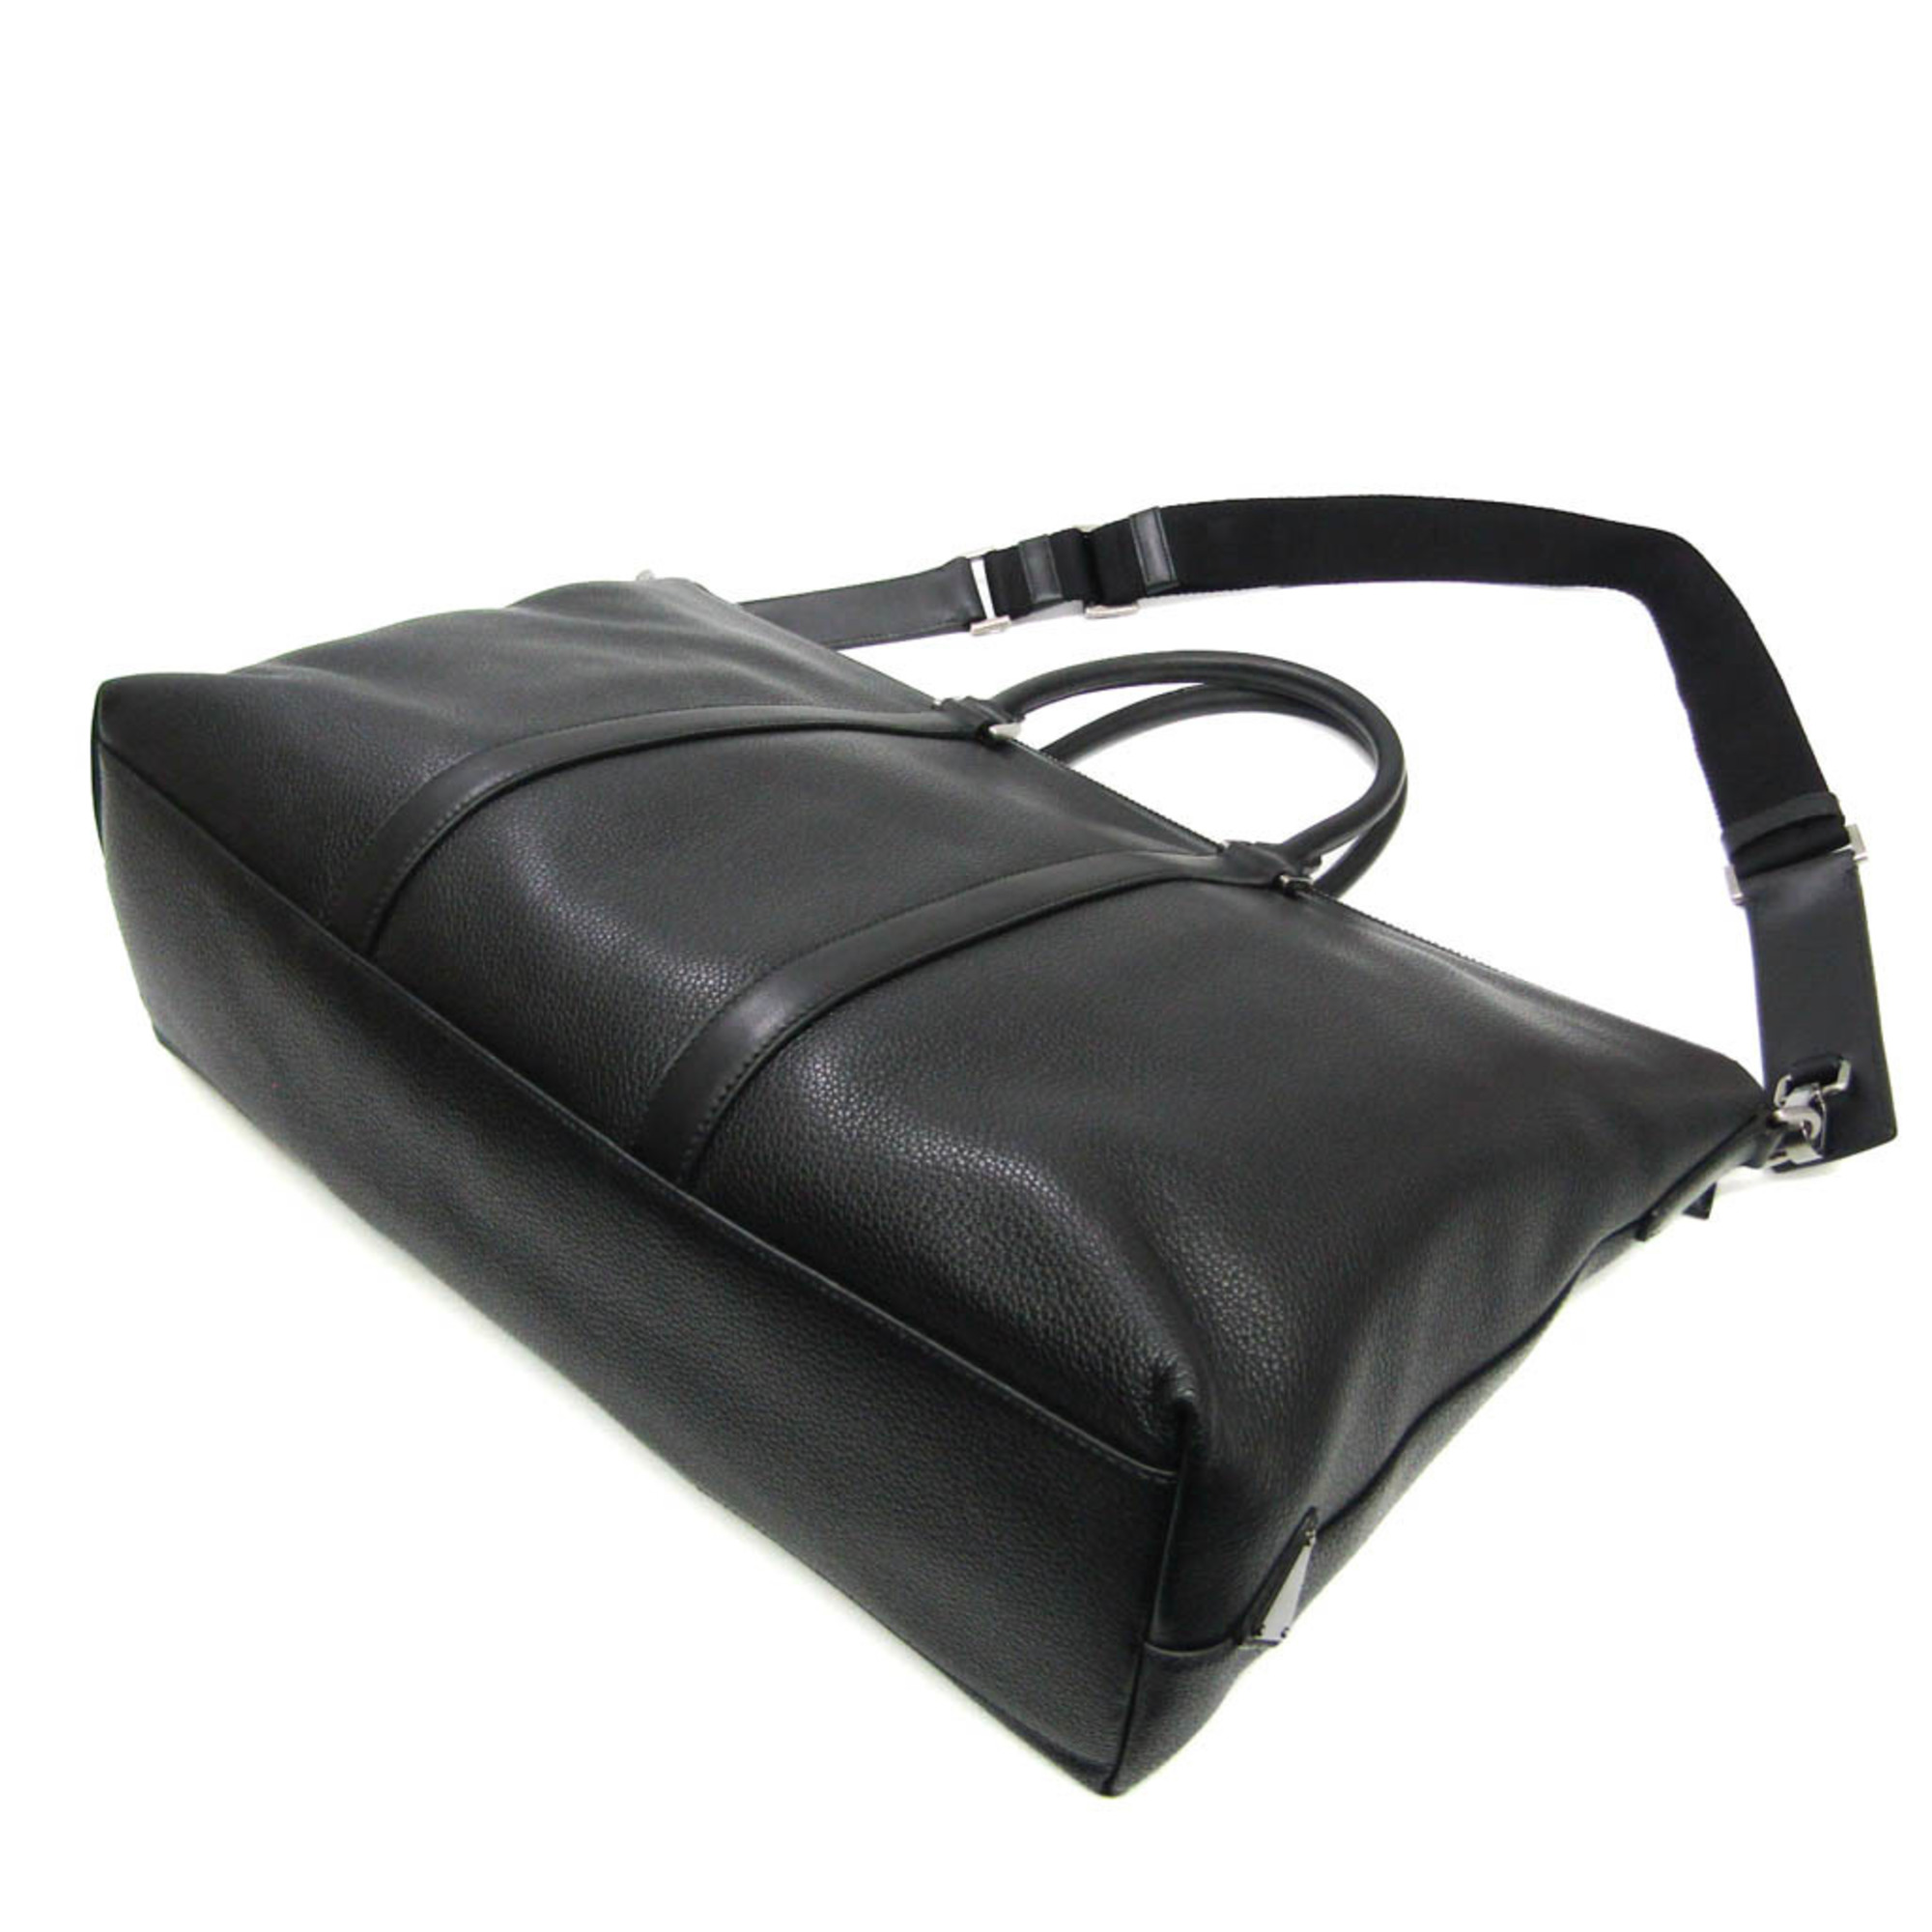 Prada 2VG013 Men's Leather Handbag,Shoulder Bag Black